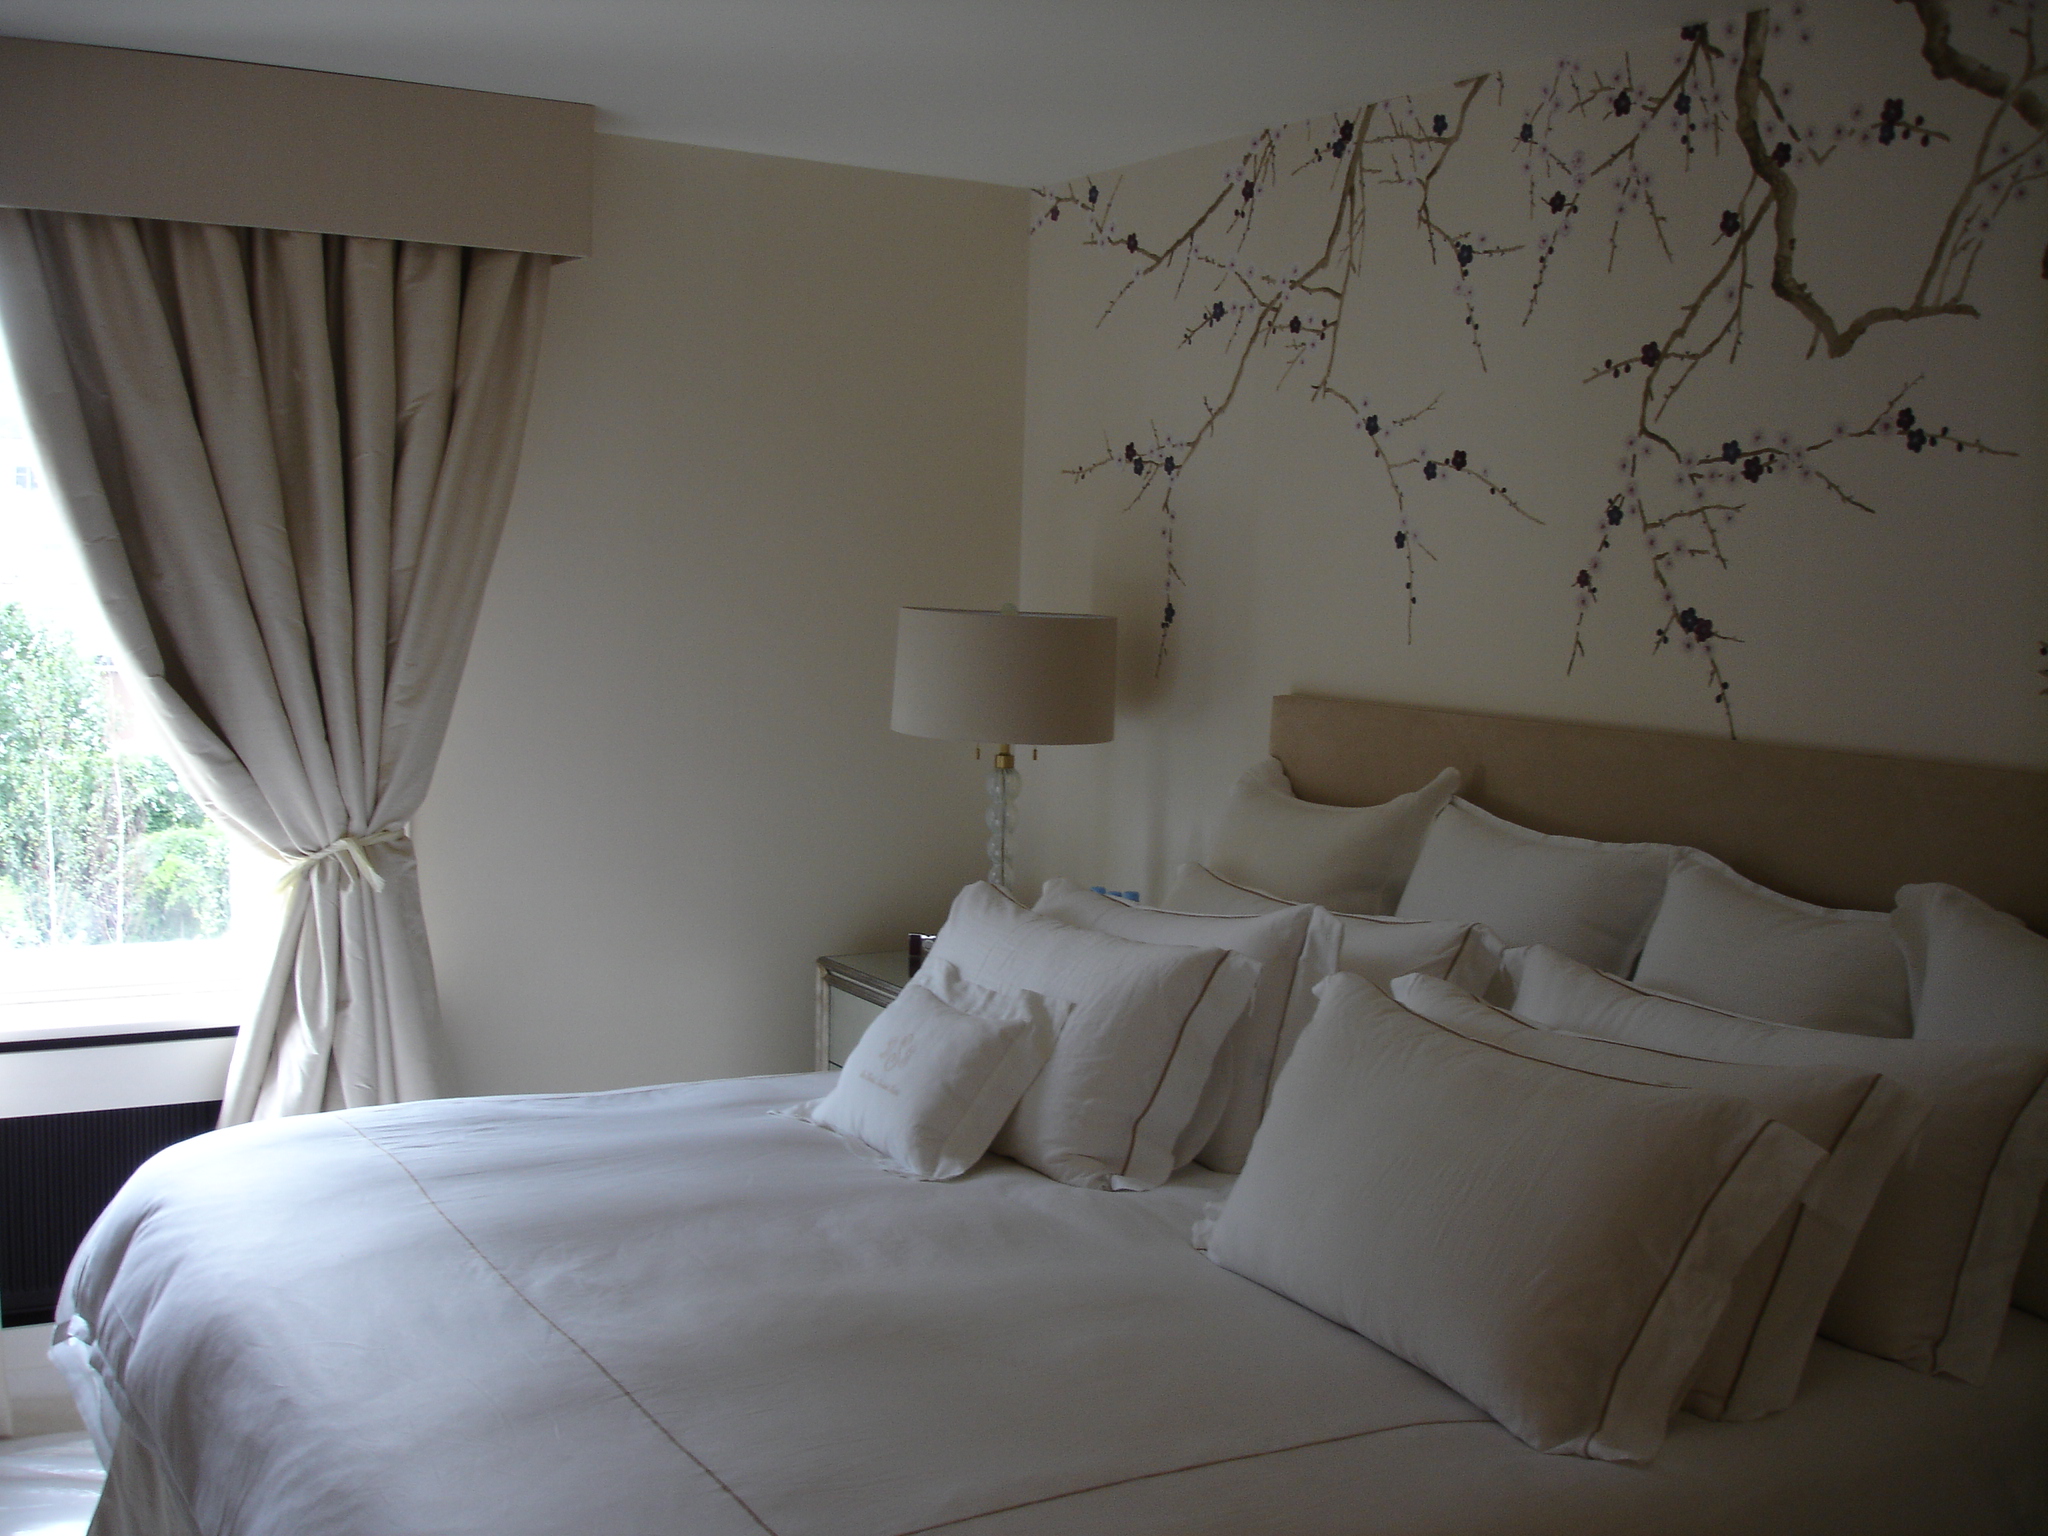 AR Bed wallpaper curtains.jpg